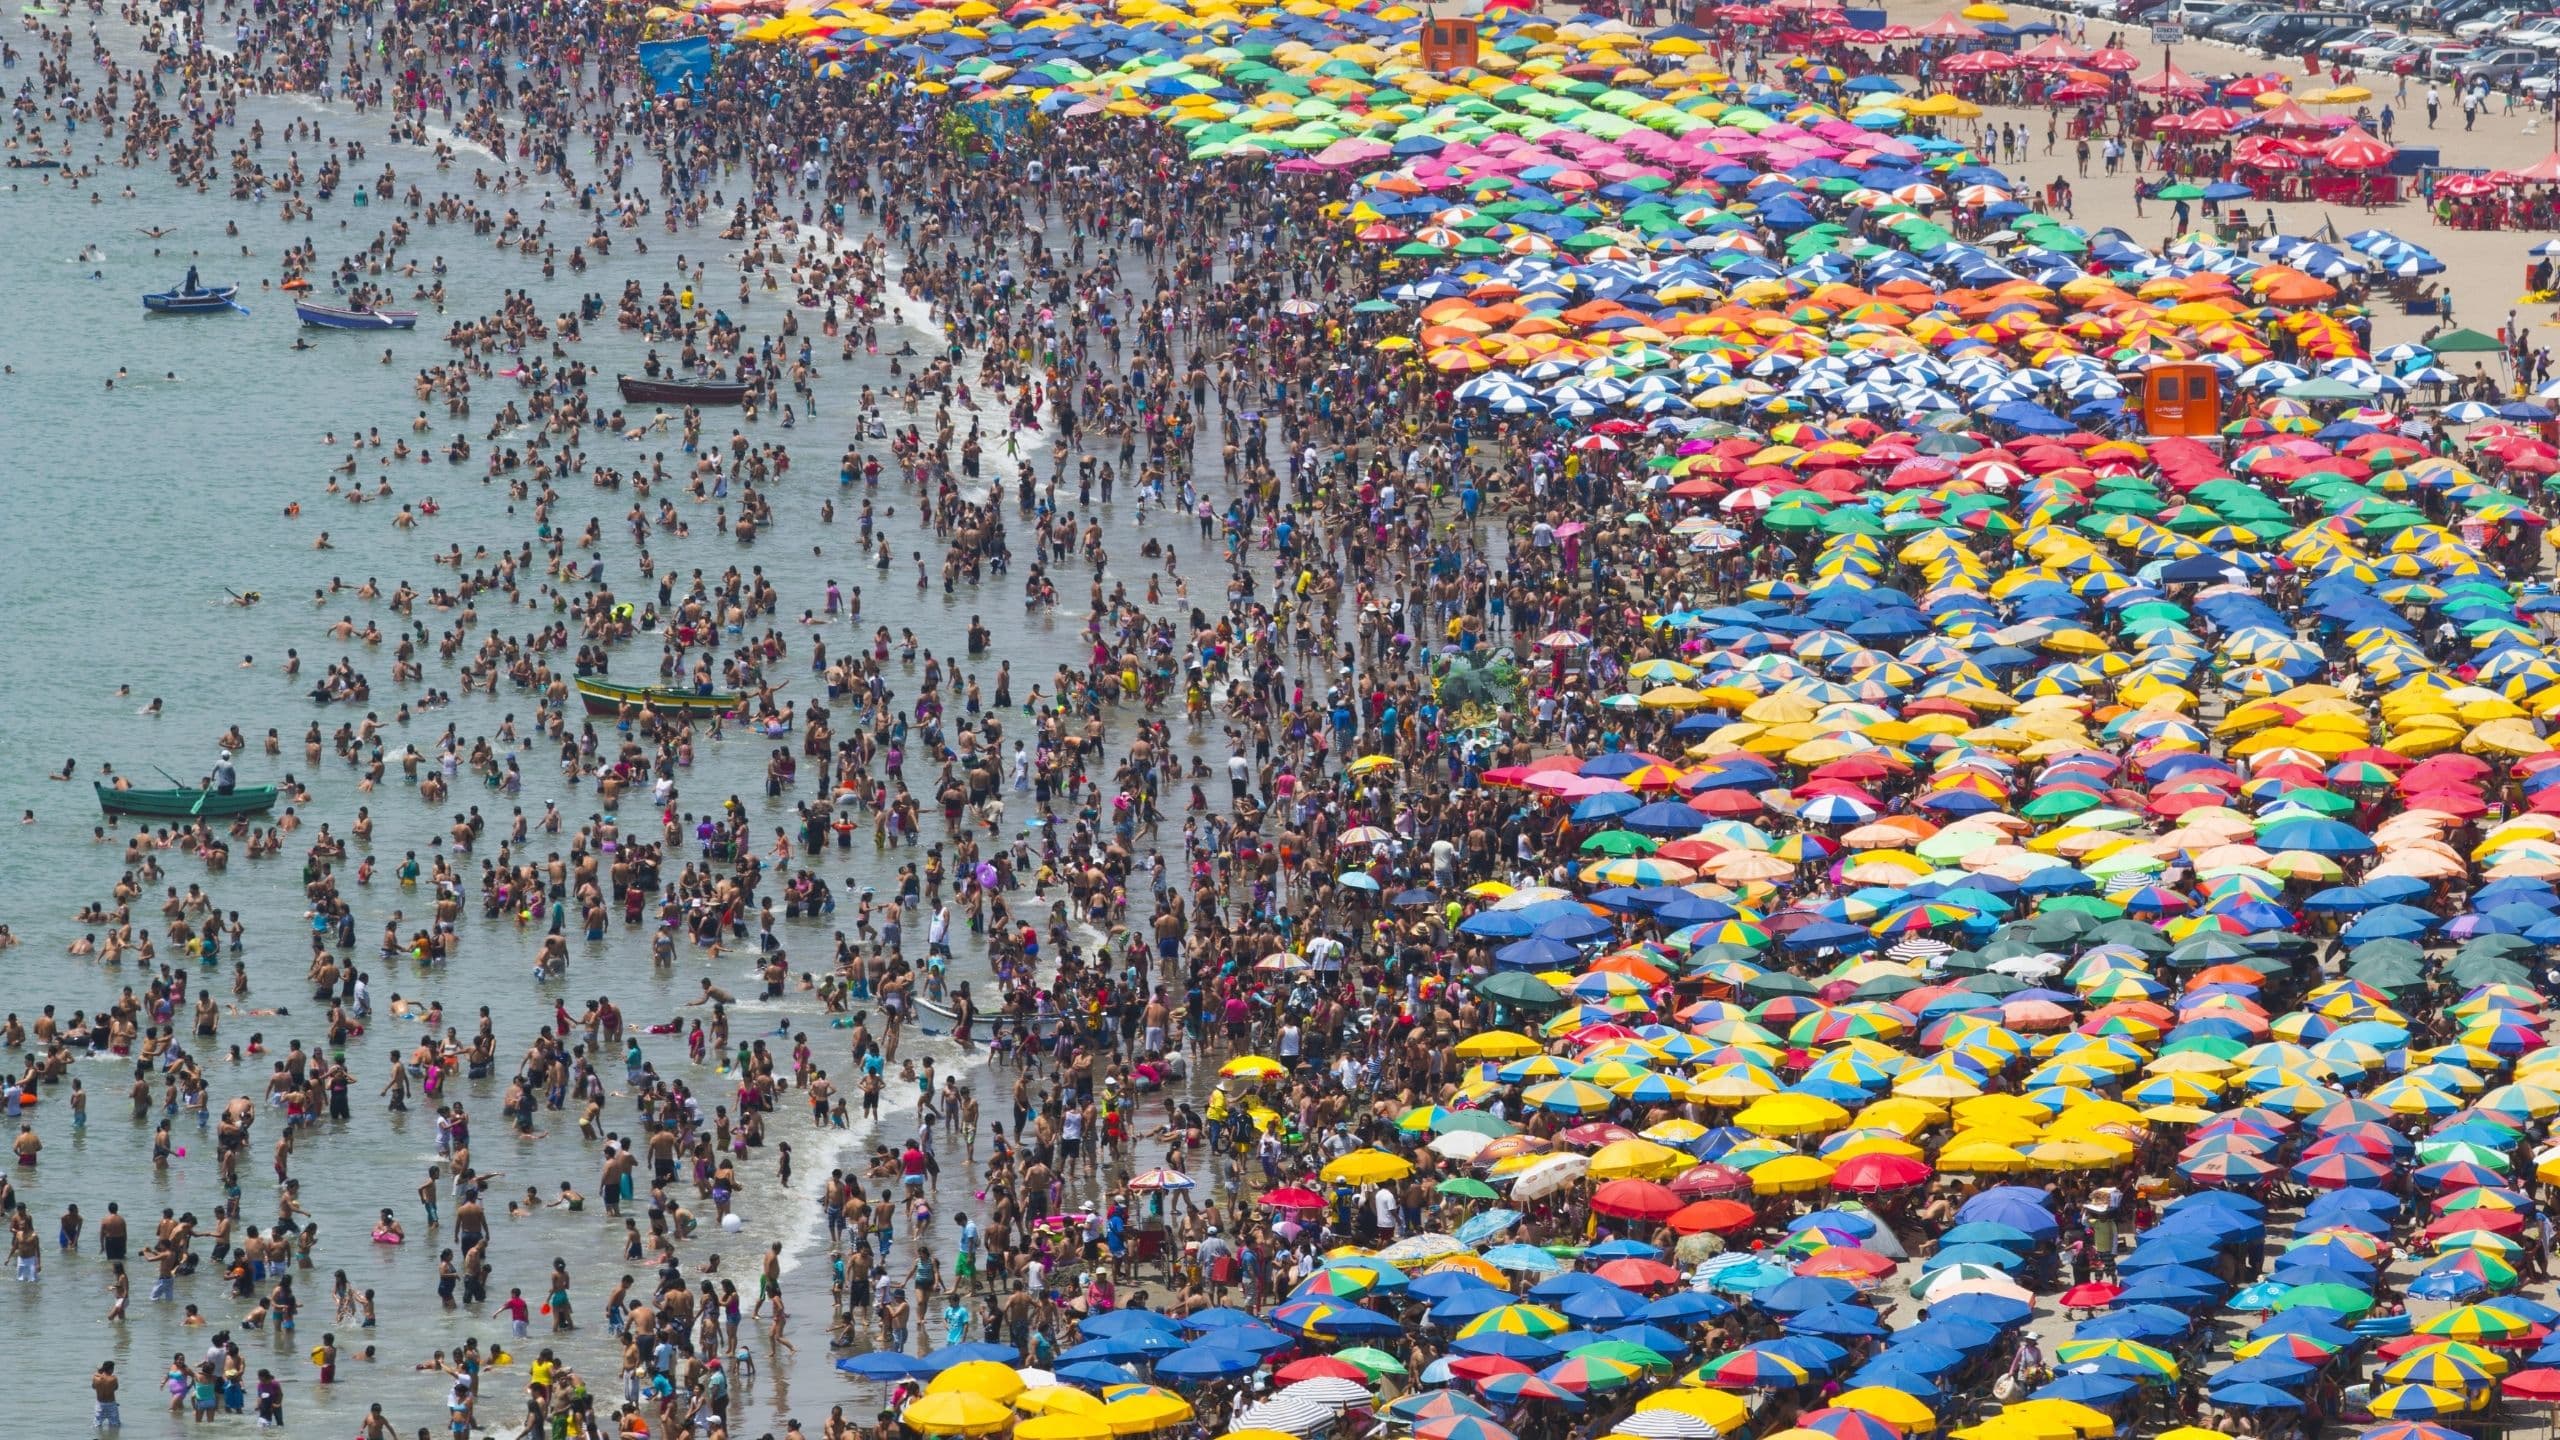 Crowded beach under heatwave, Lima, 2015